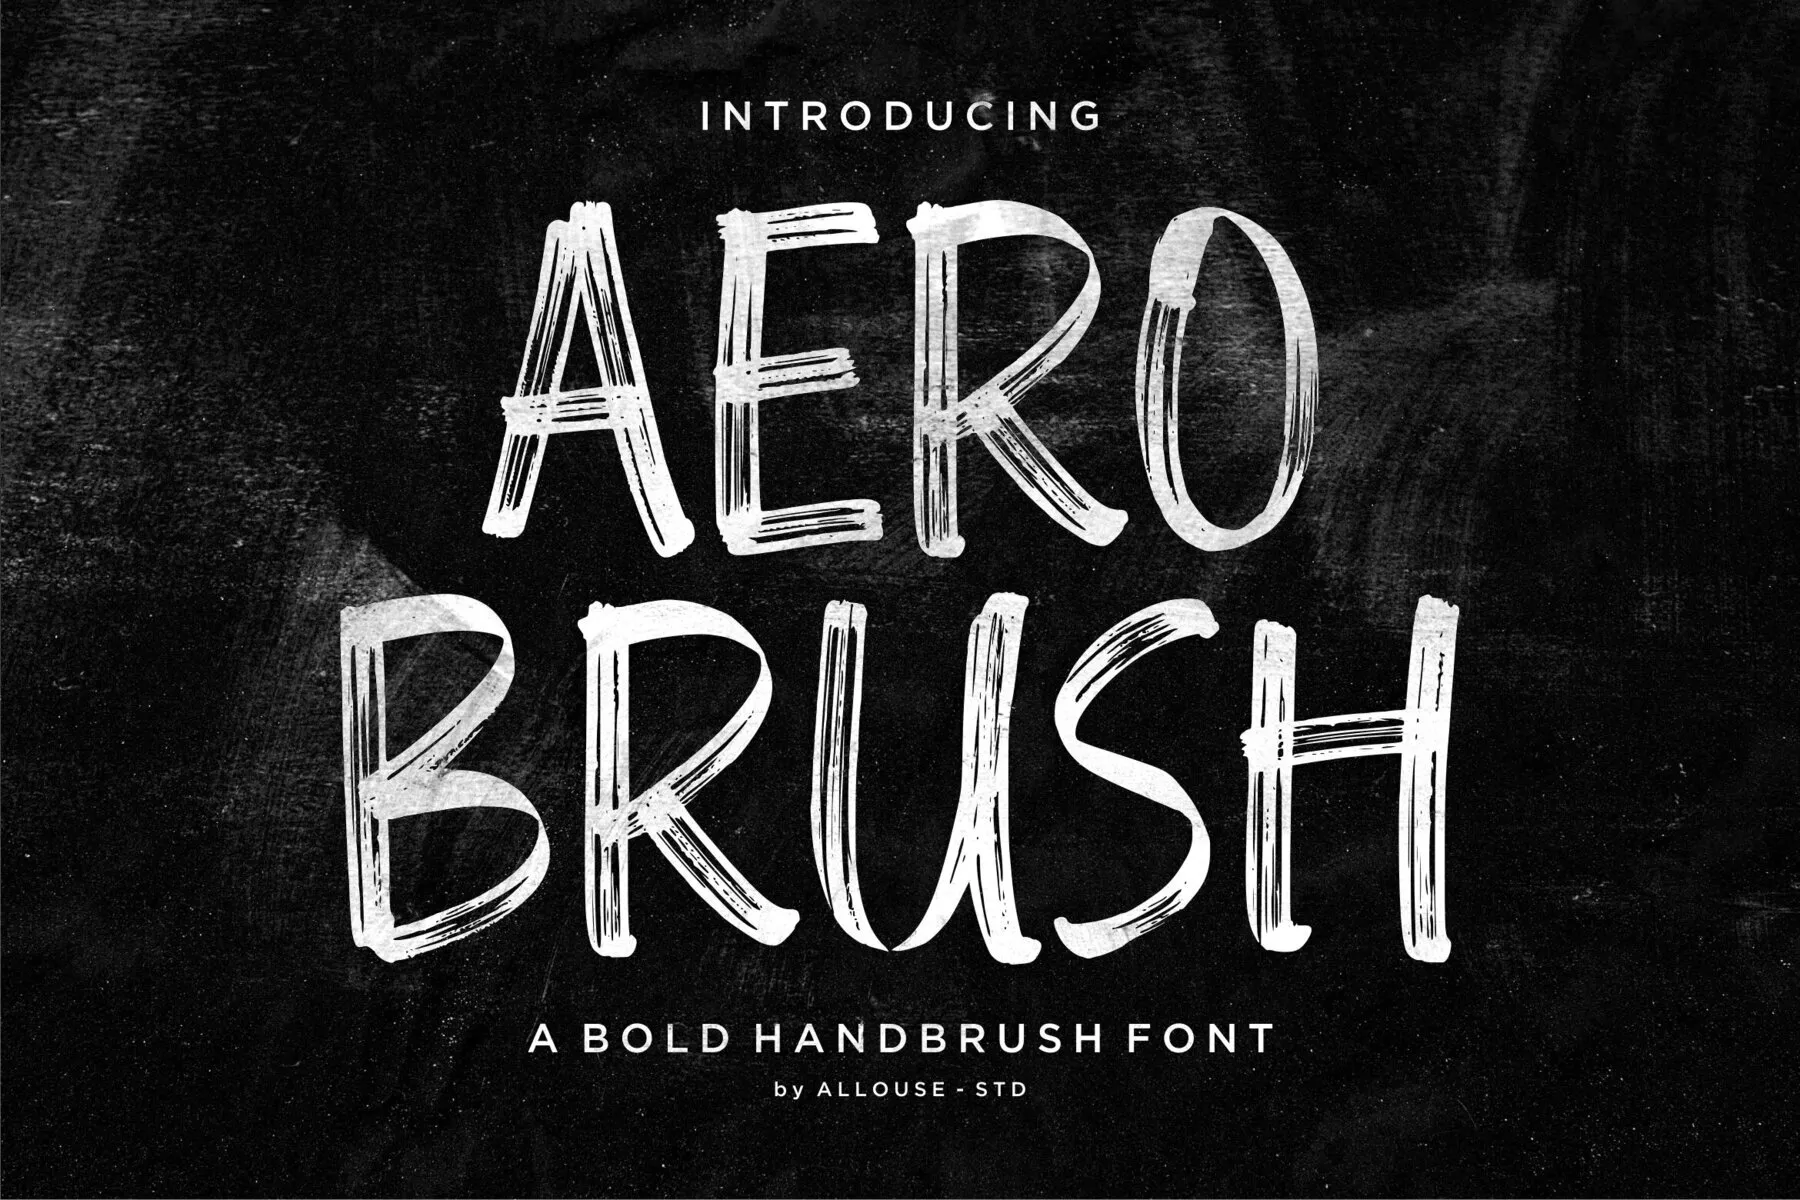 Aero Brush